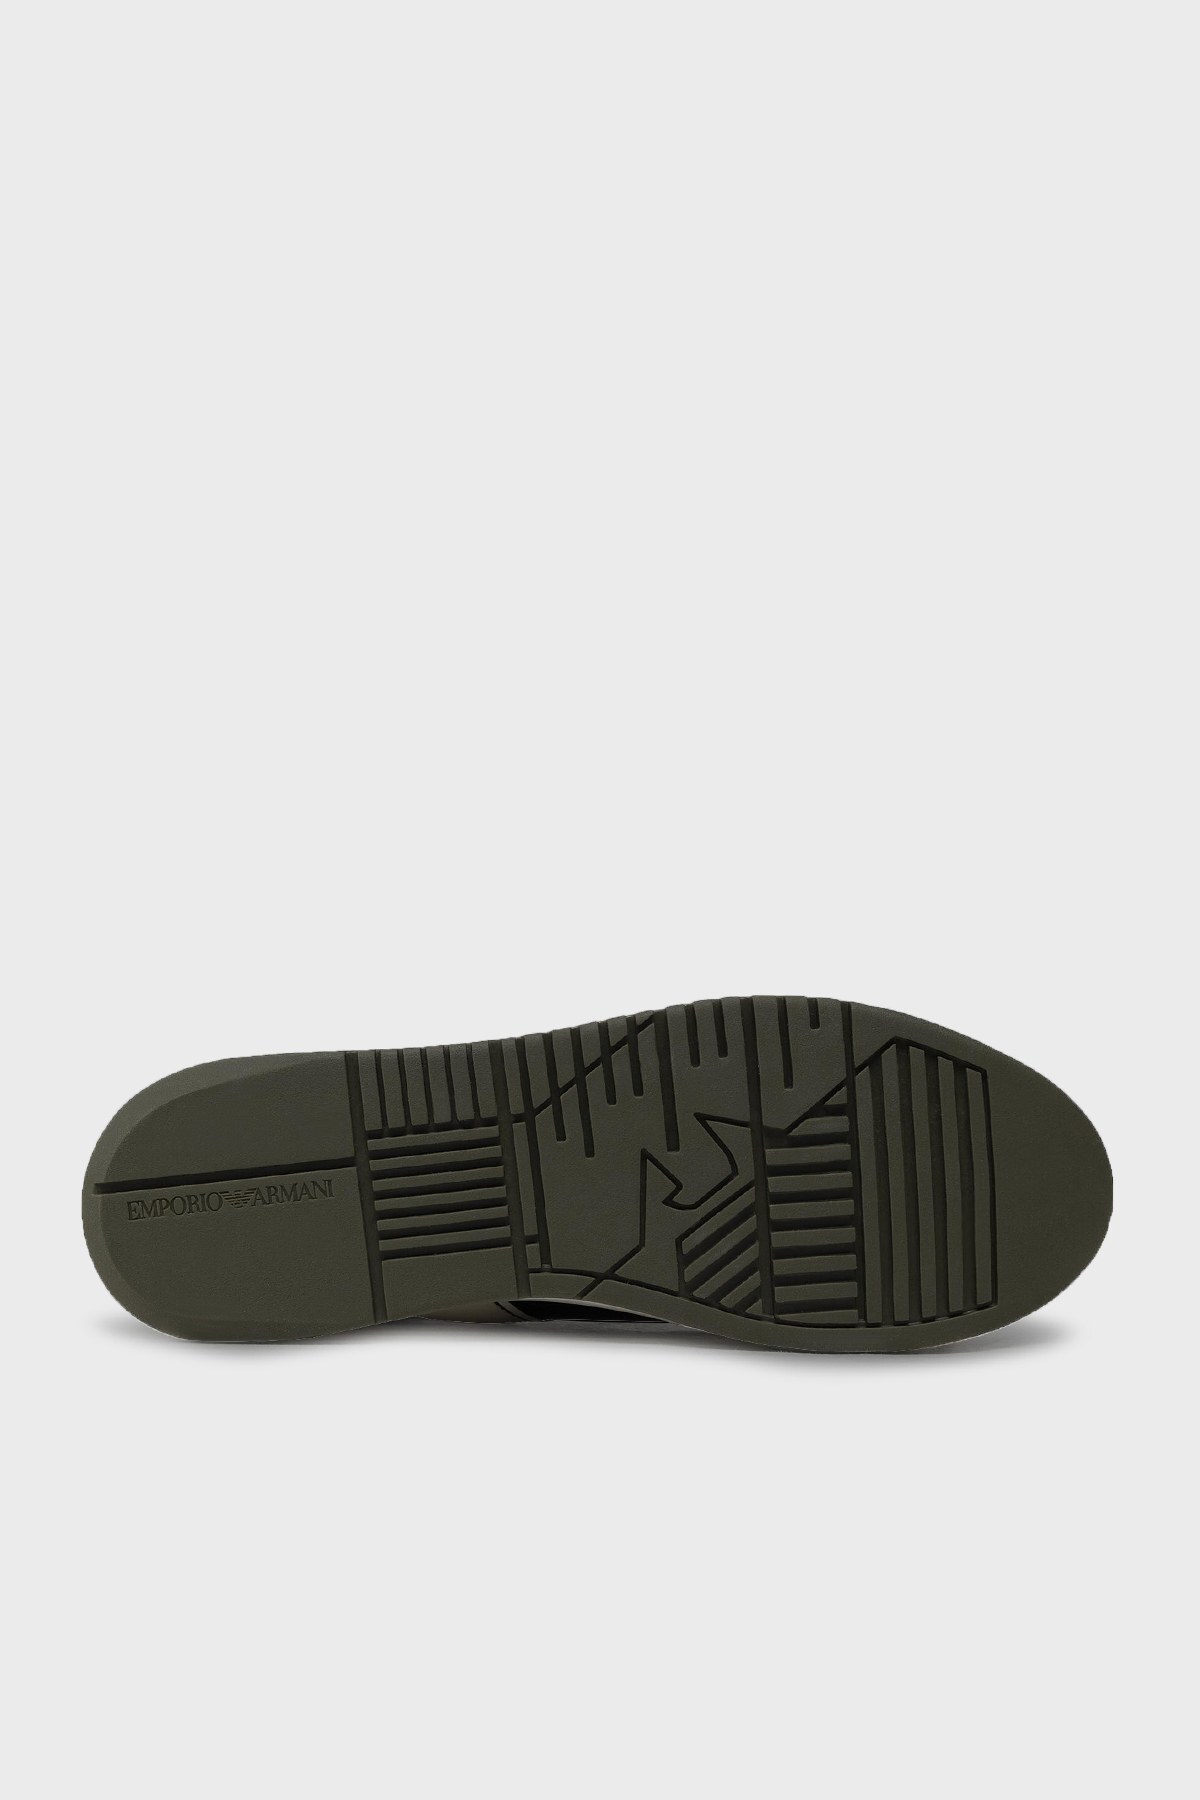 Emporio Armani Logolu Hakiki Deri Sneaker Erkek Ayakkabı X4X264 XM986 Q355 BEJ